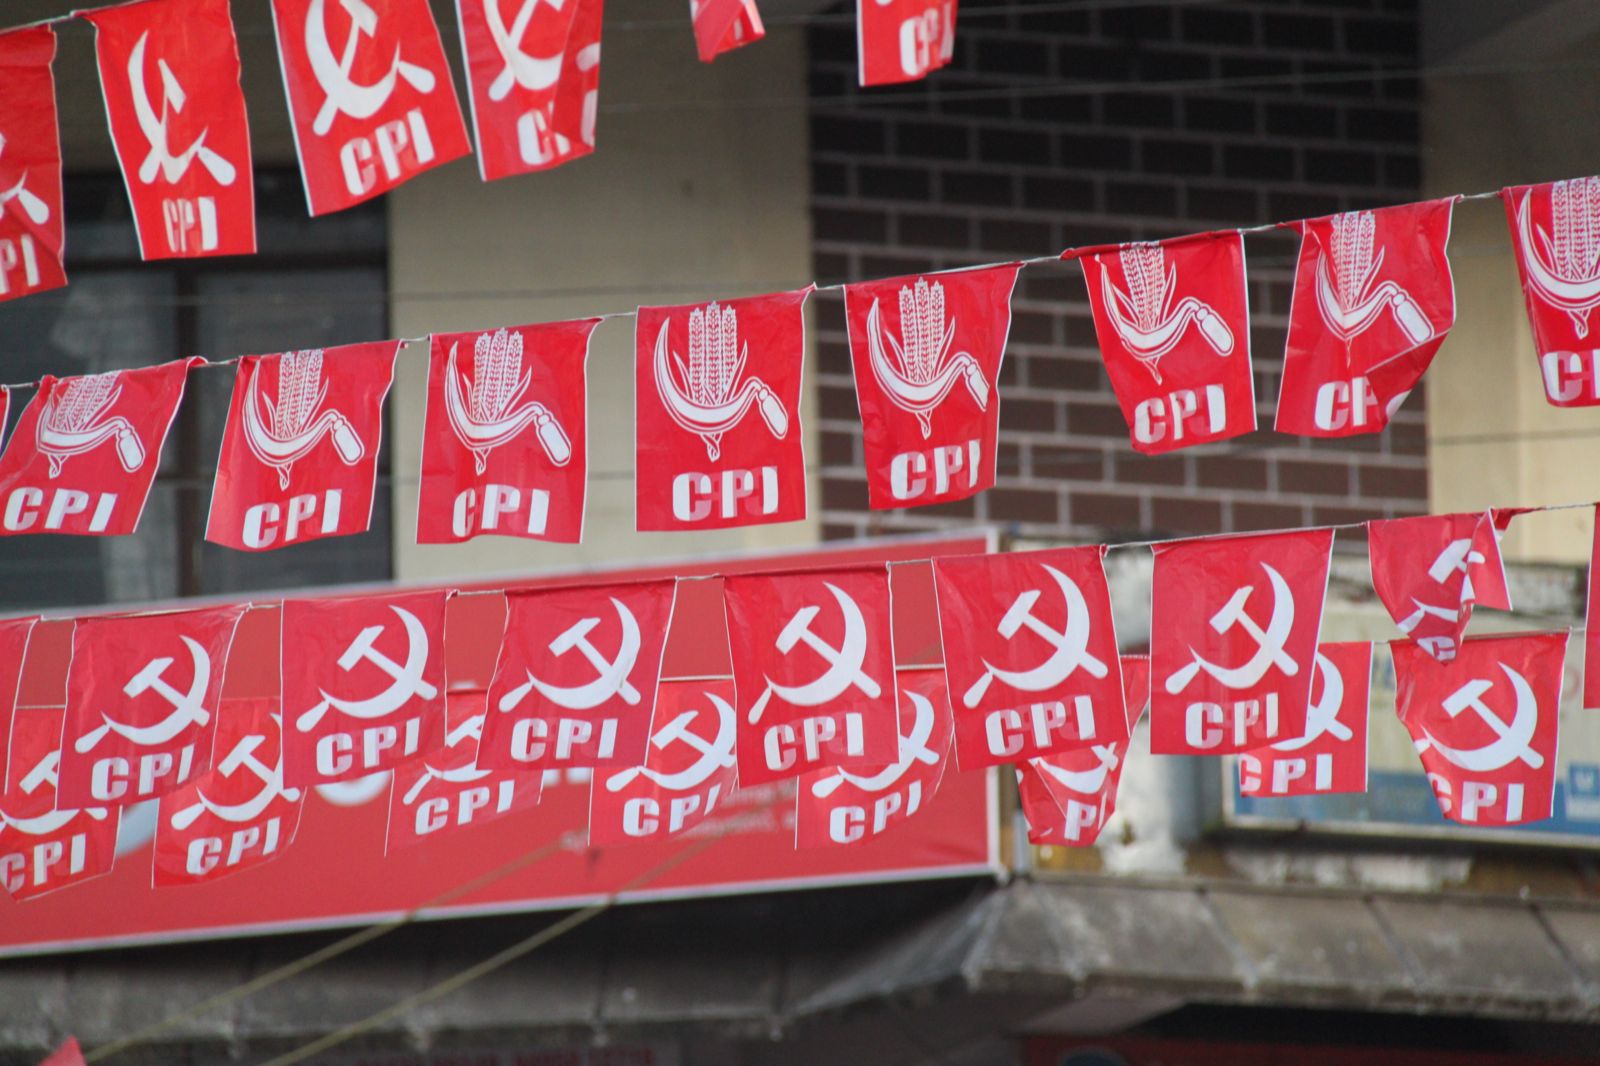 Inde/Législatives : Quels enjeux pour les communistes lors des élections générales de 2014 ?